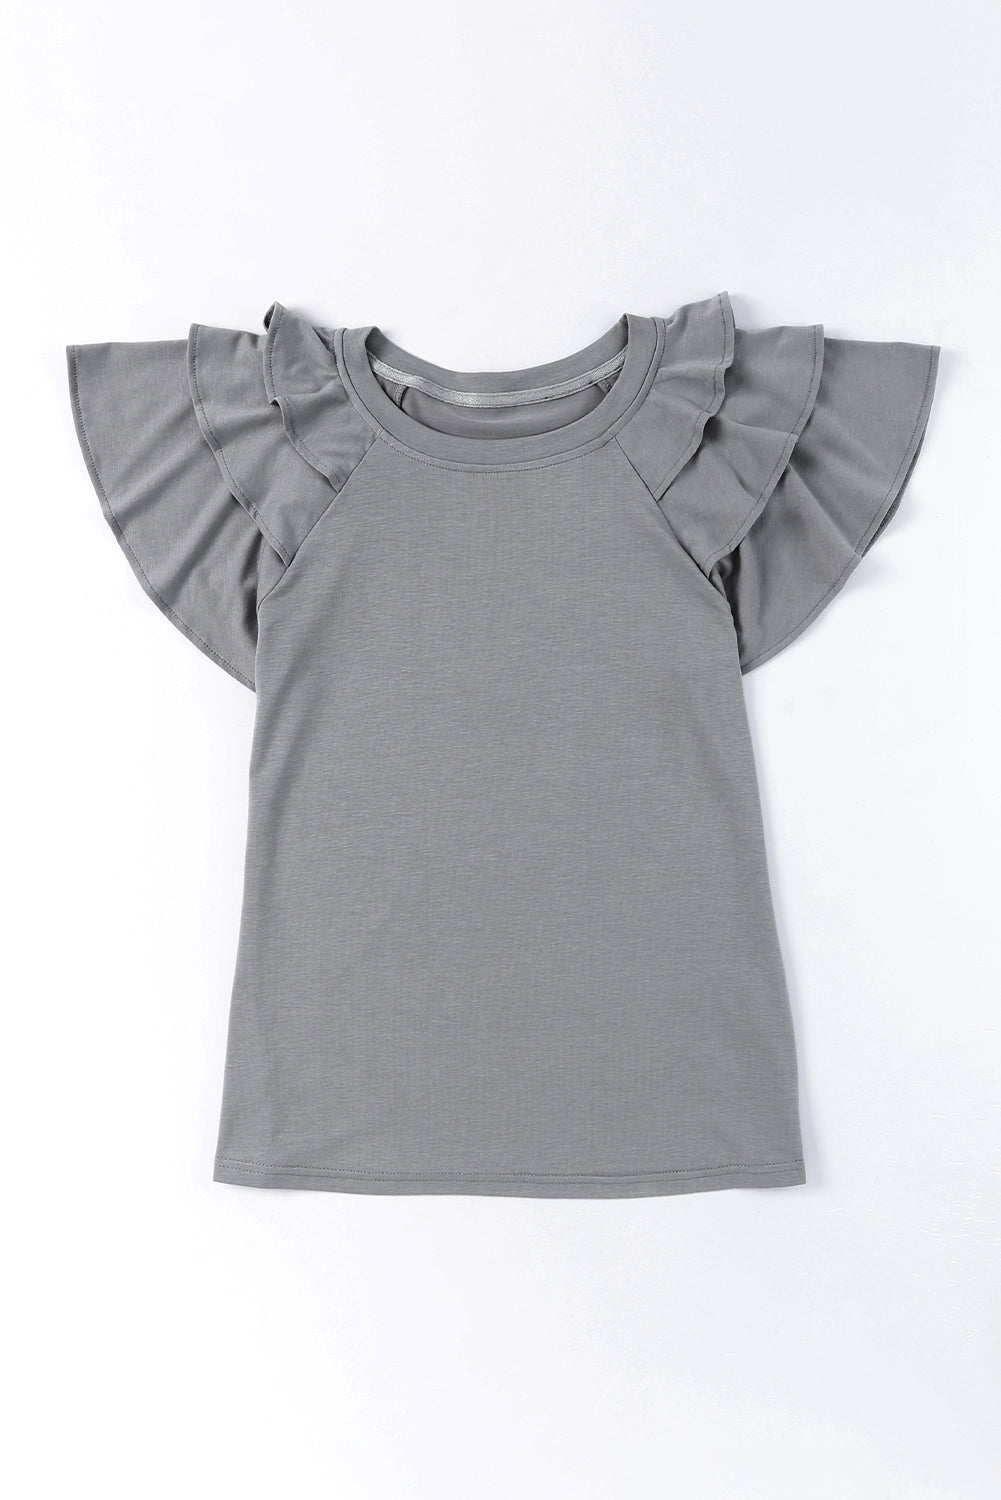 T-shirt gris uni à manches courtes et à volants